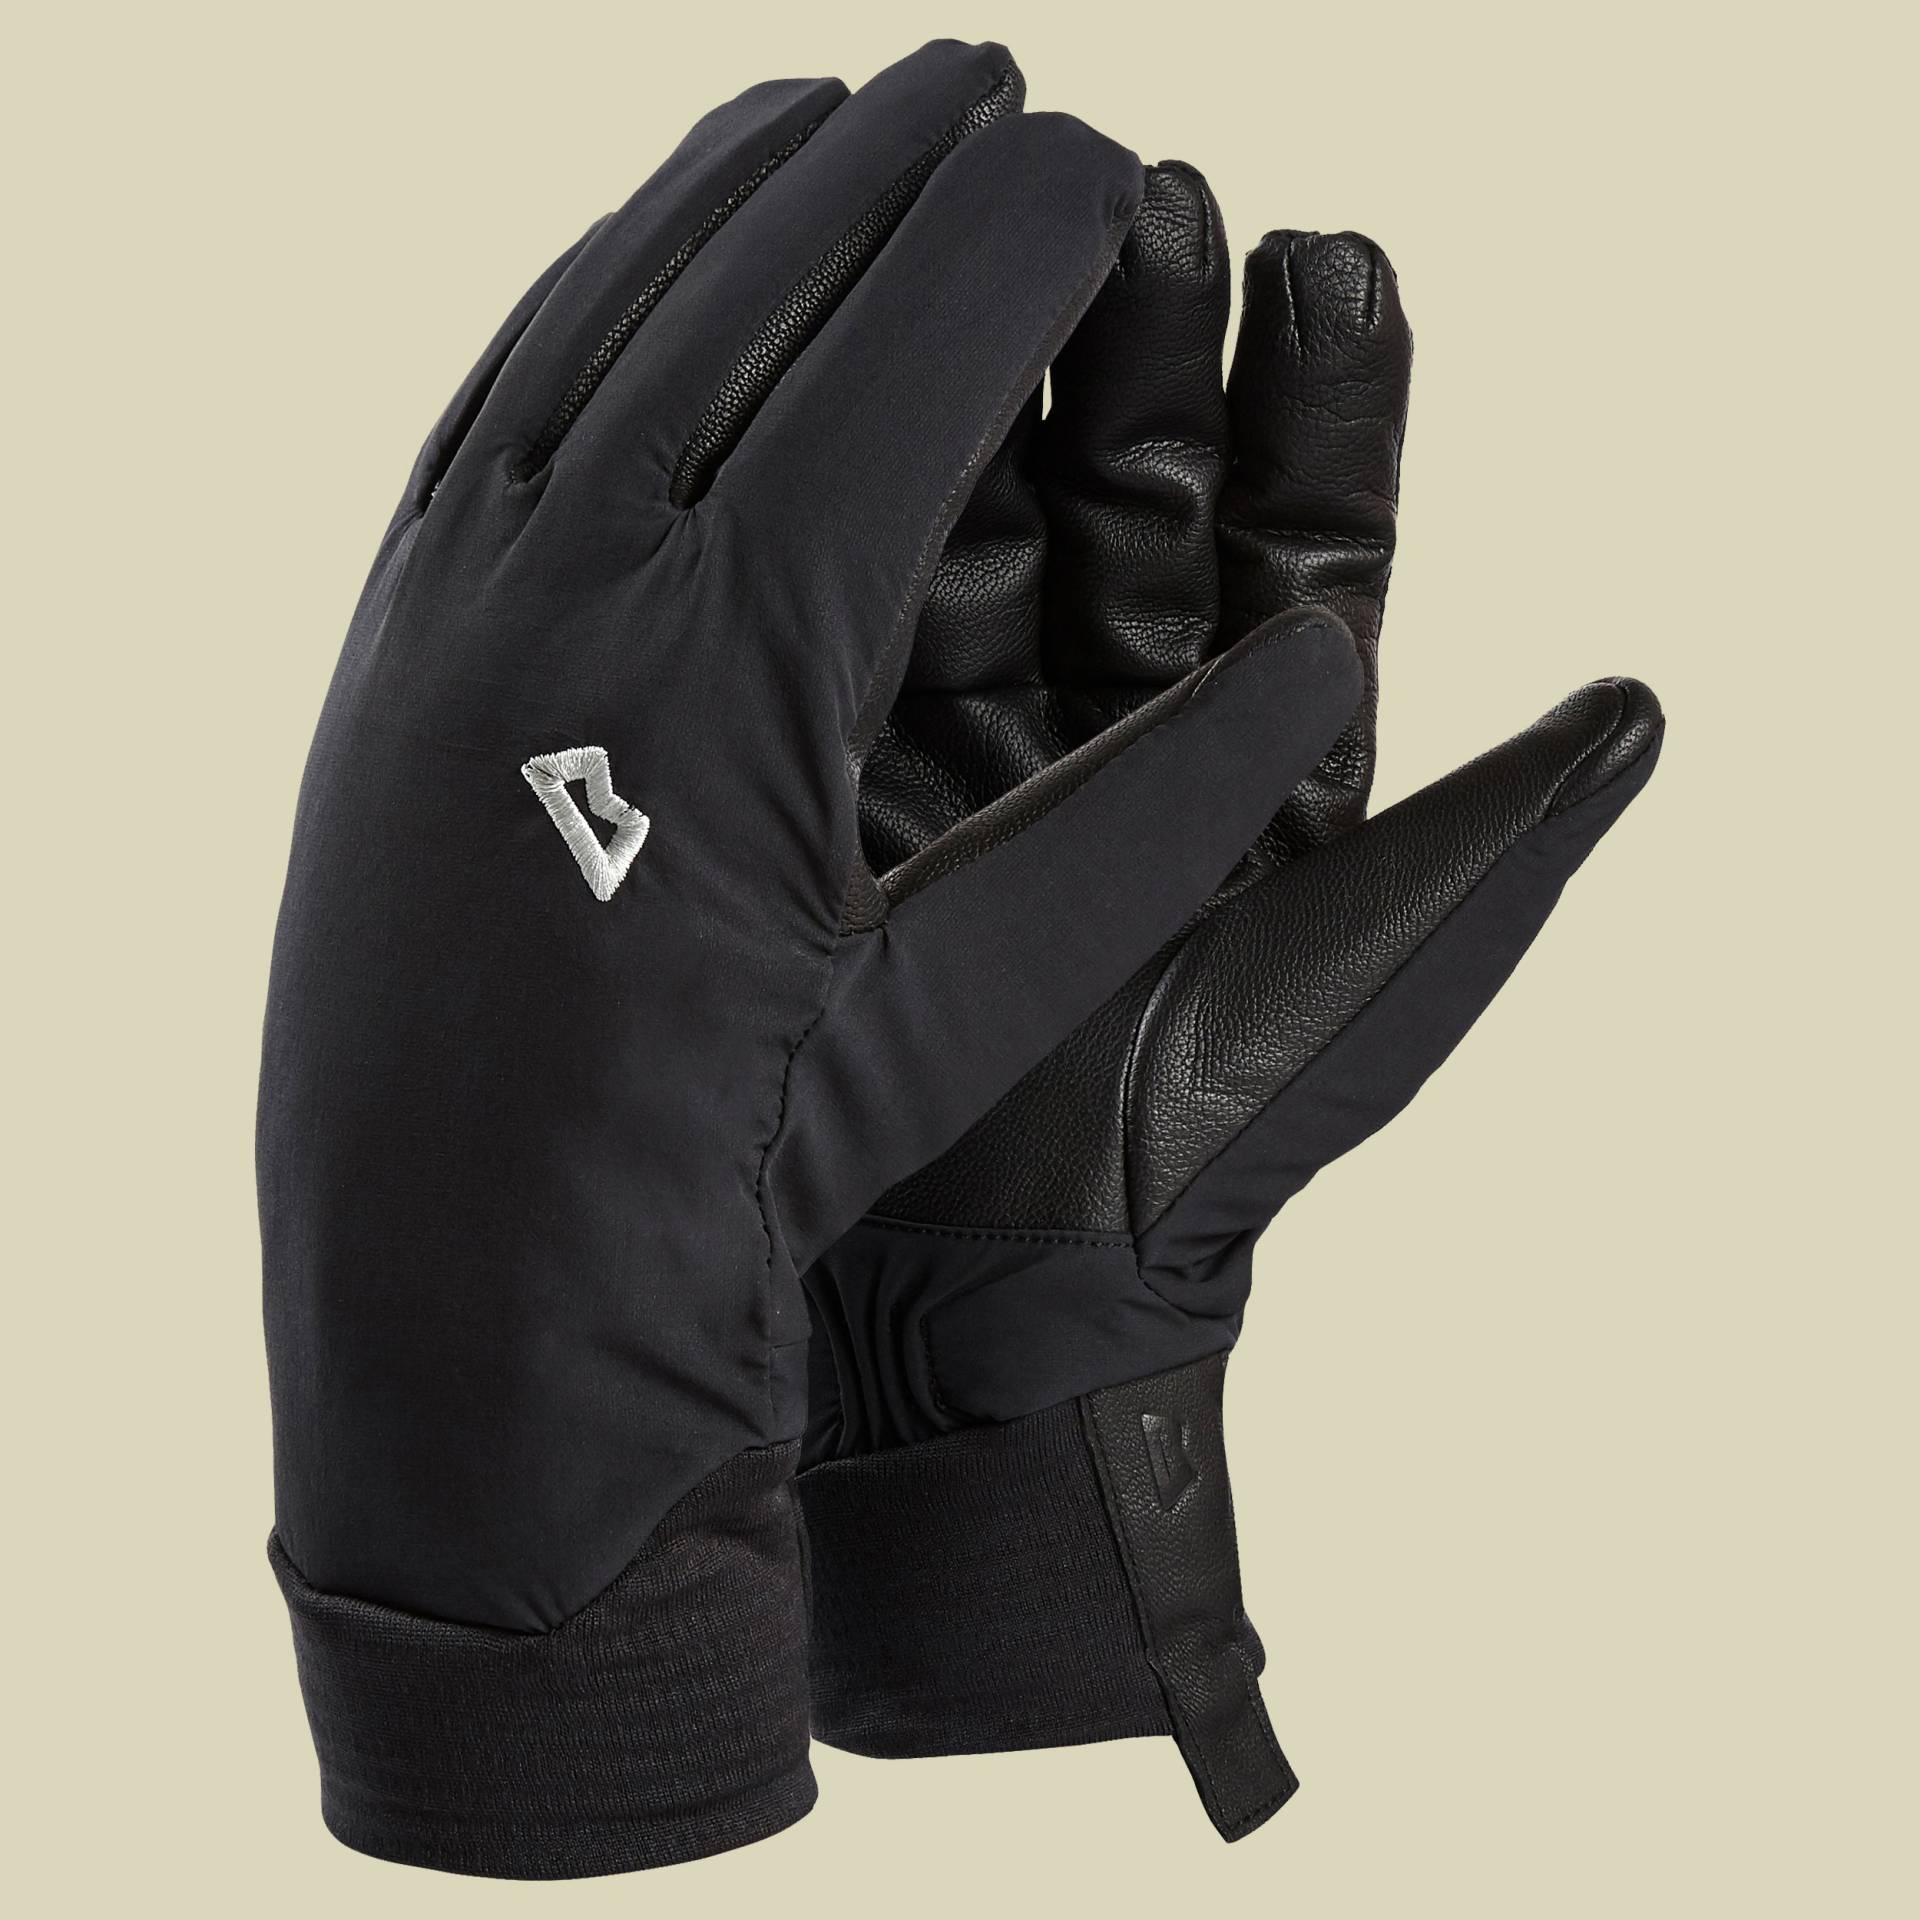 Tour Glove Men Größe S Farbe black Me-01004 von Mountain Equipment